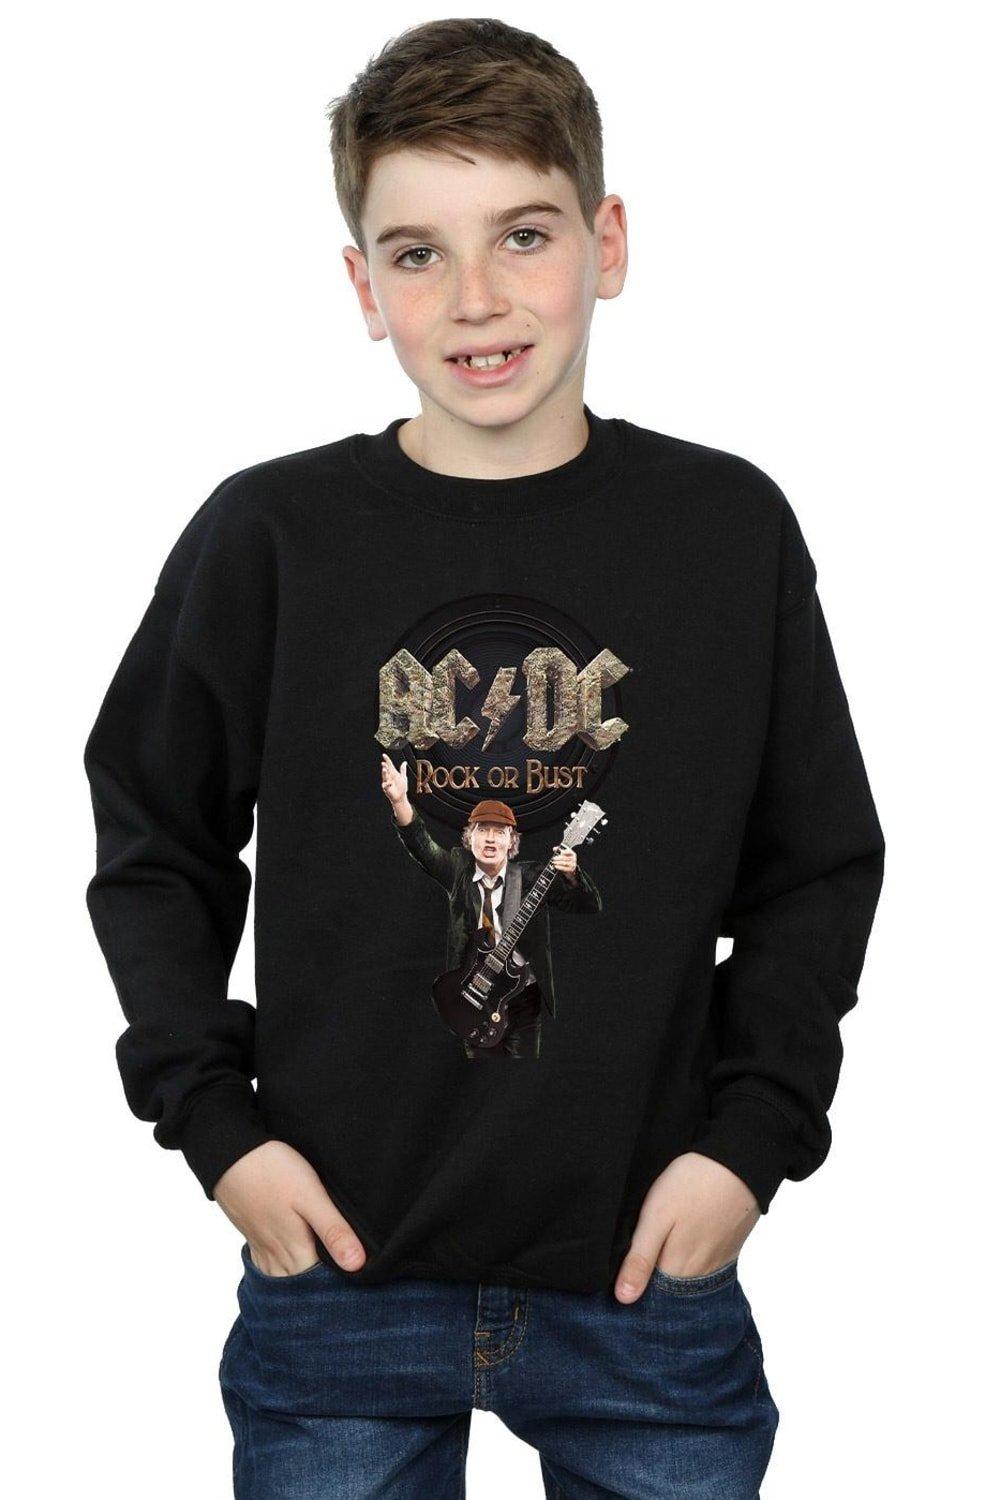 Rock Or Bust Angus Young Sweatshirt